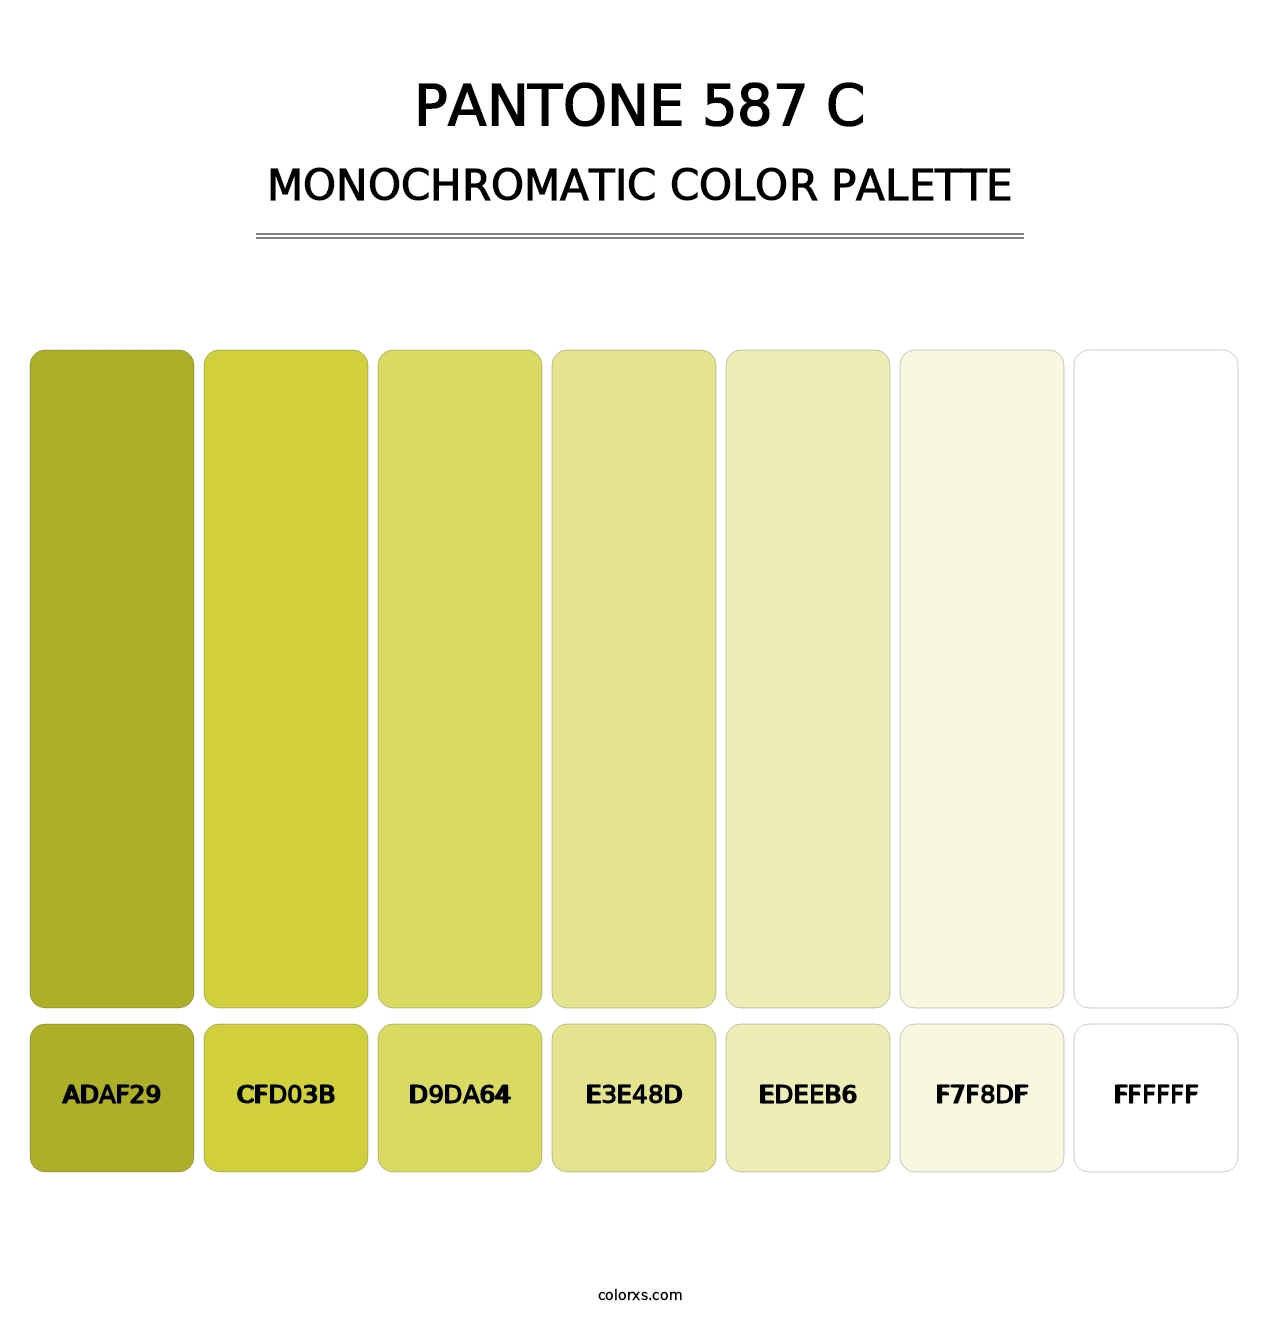 PANTONE 587 C - Monochromatic Color Palette